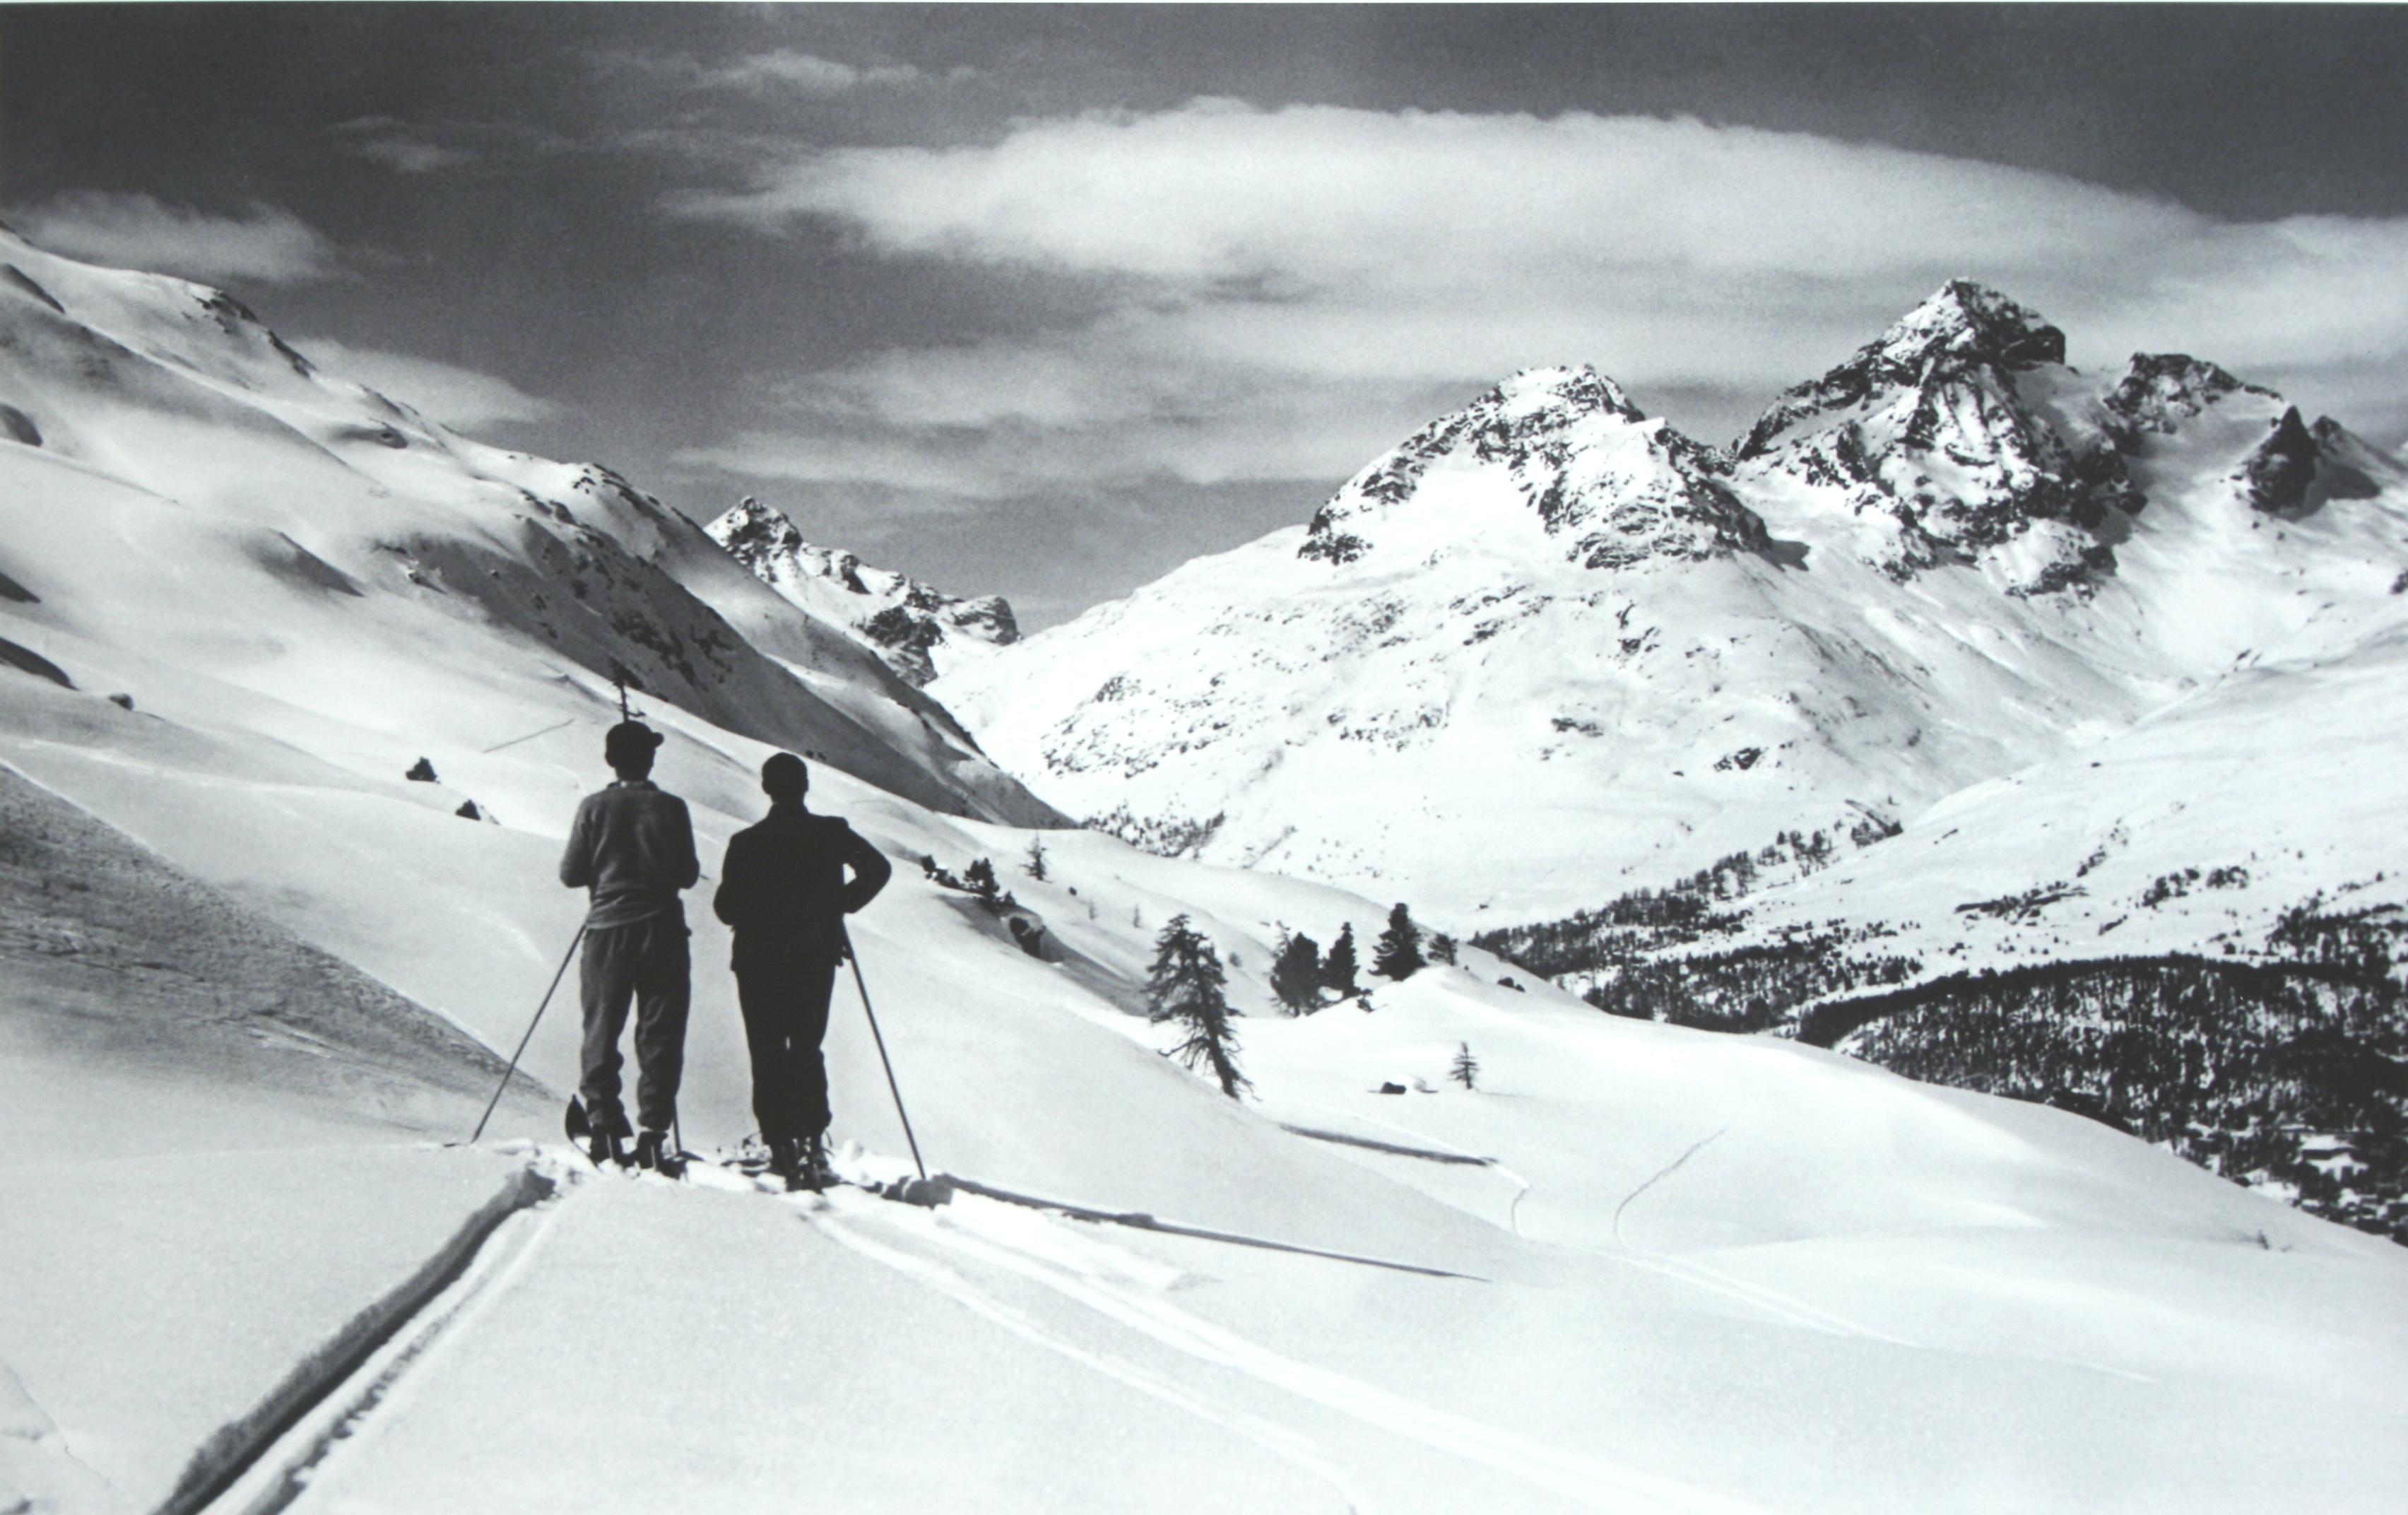 Vintage, antike Alpinskifotografie.
Panoramablick